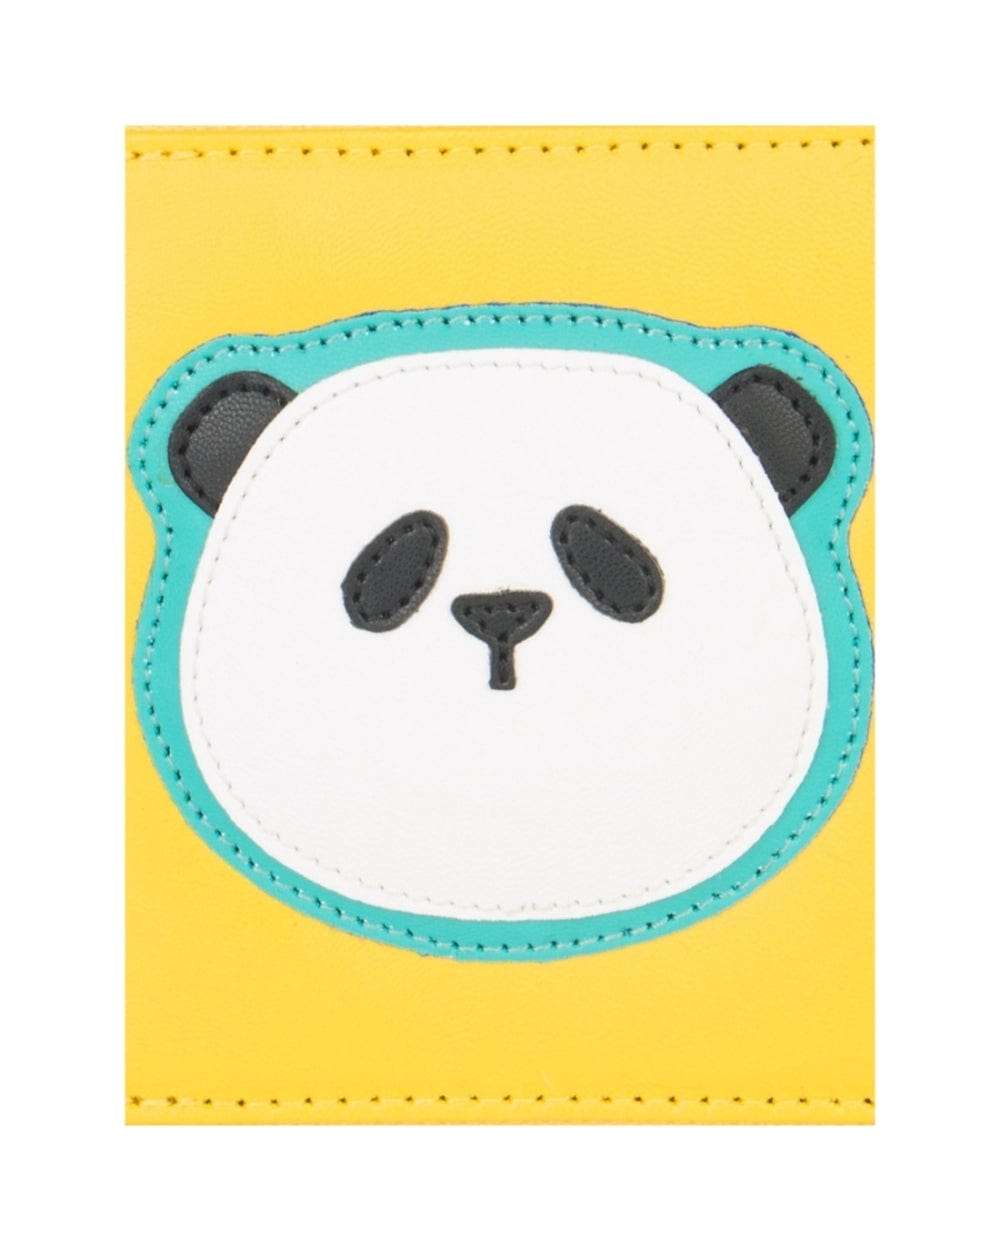 Chumbak Panda Face Mini Wallet - Yellow